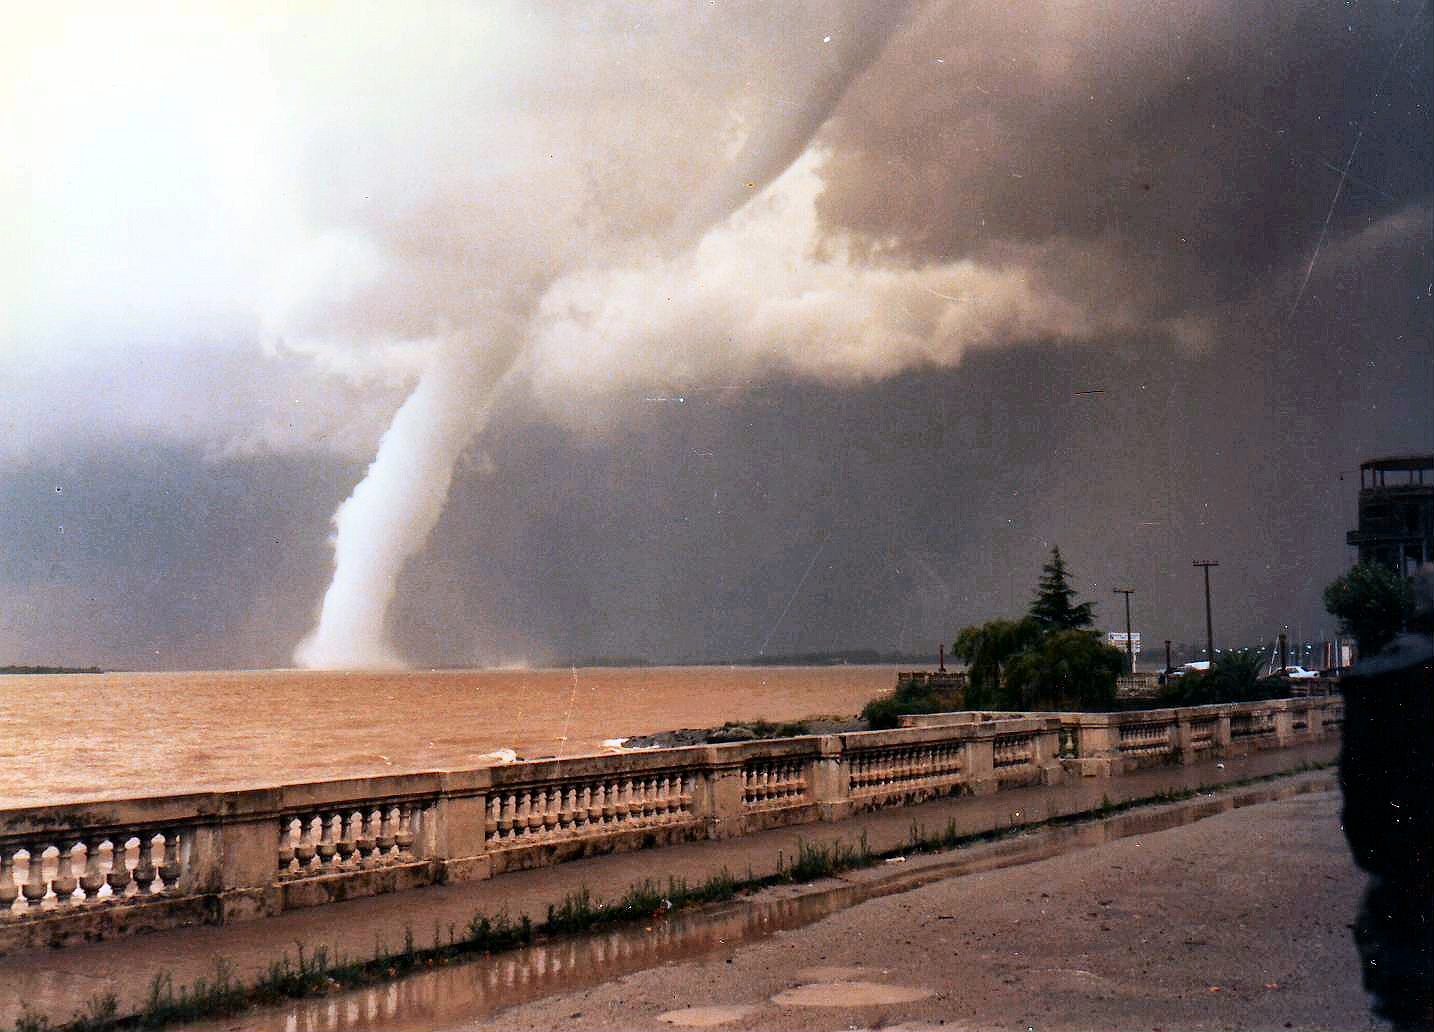 Imponentes trombas registradas en la costa de Colonia, Uruguay el 28 de enero de 1988 (GustFront).